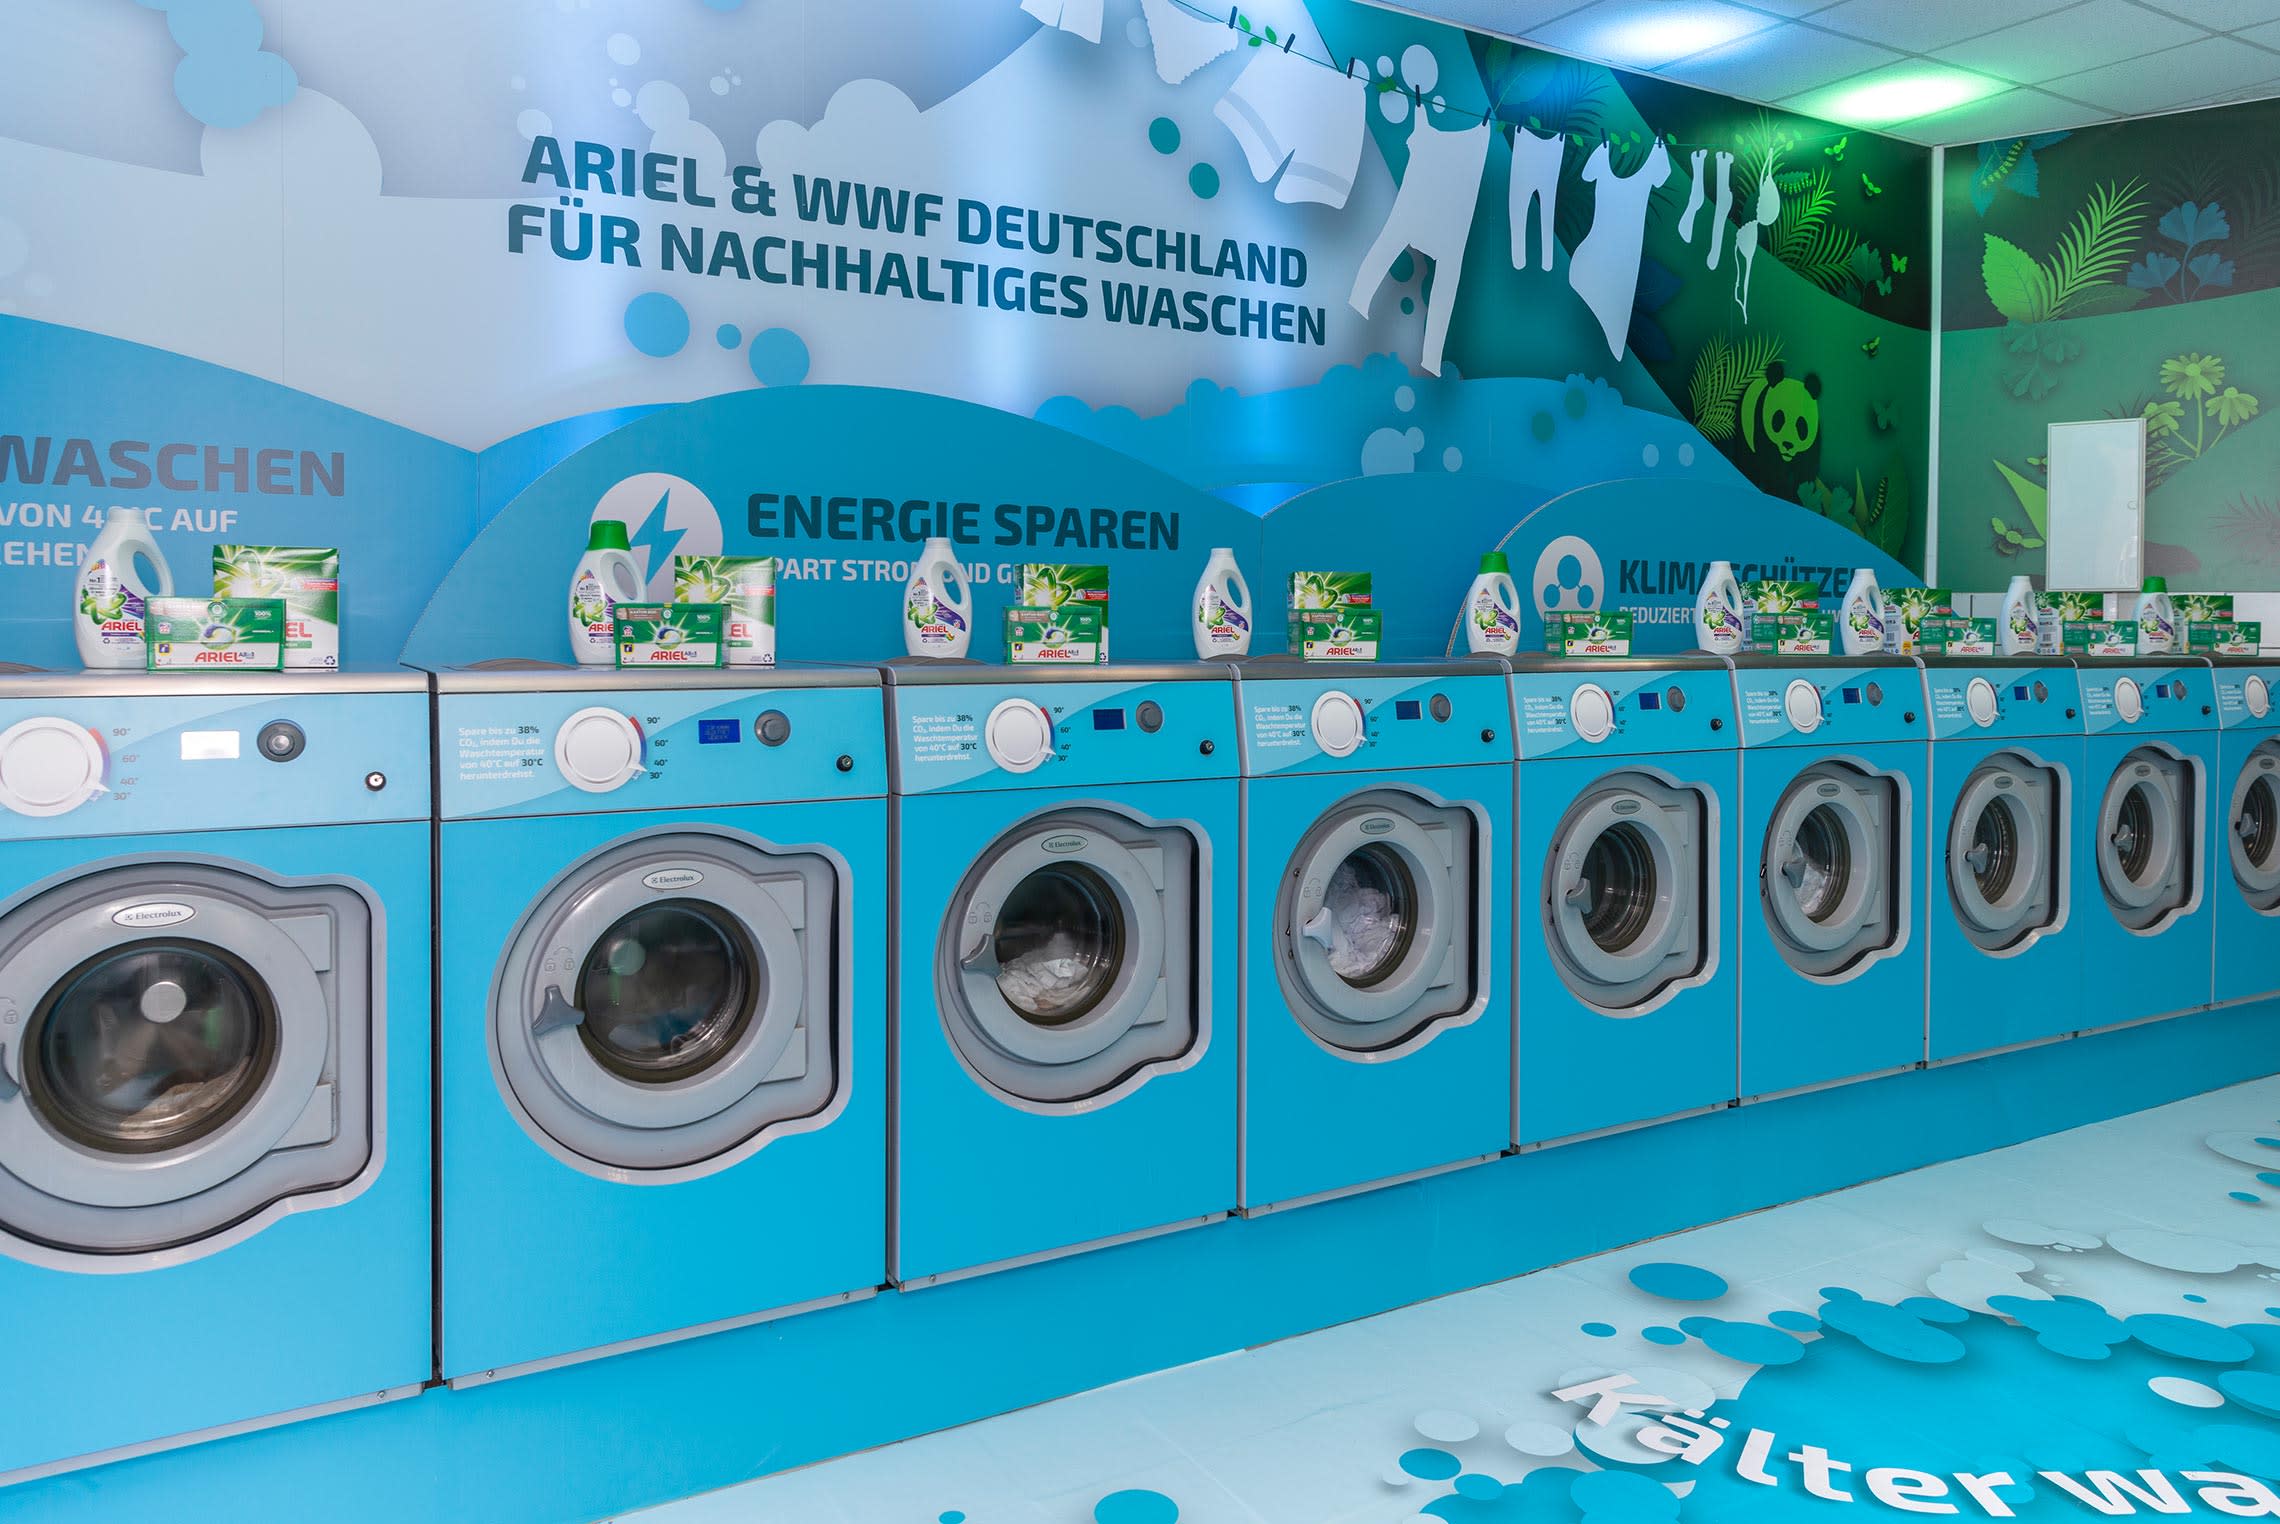 Der Kaltwaschsalon von WWF und Ariel zeigt wie man nachhaltiger waschen kann.